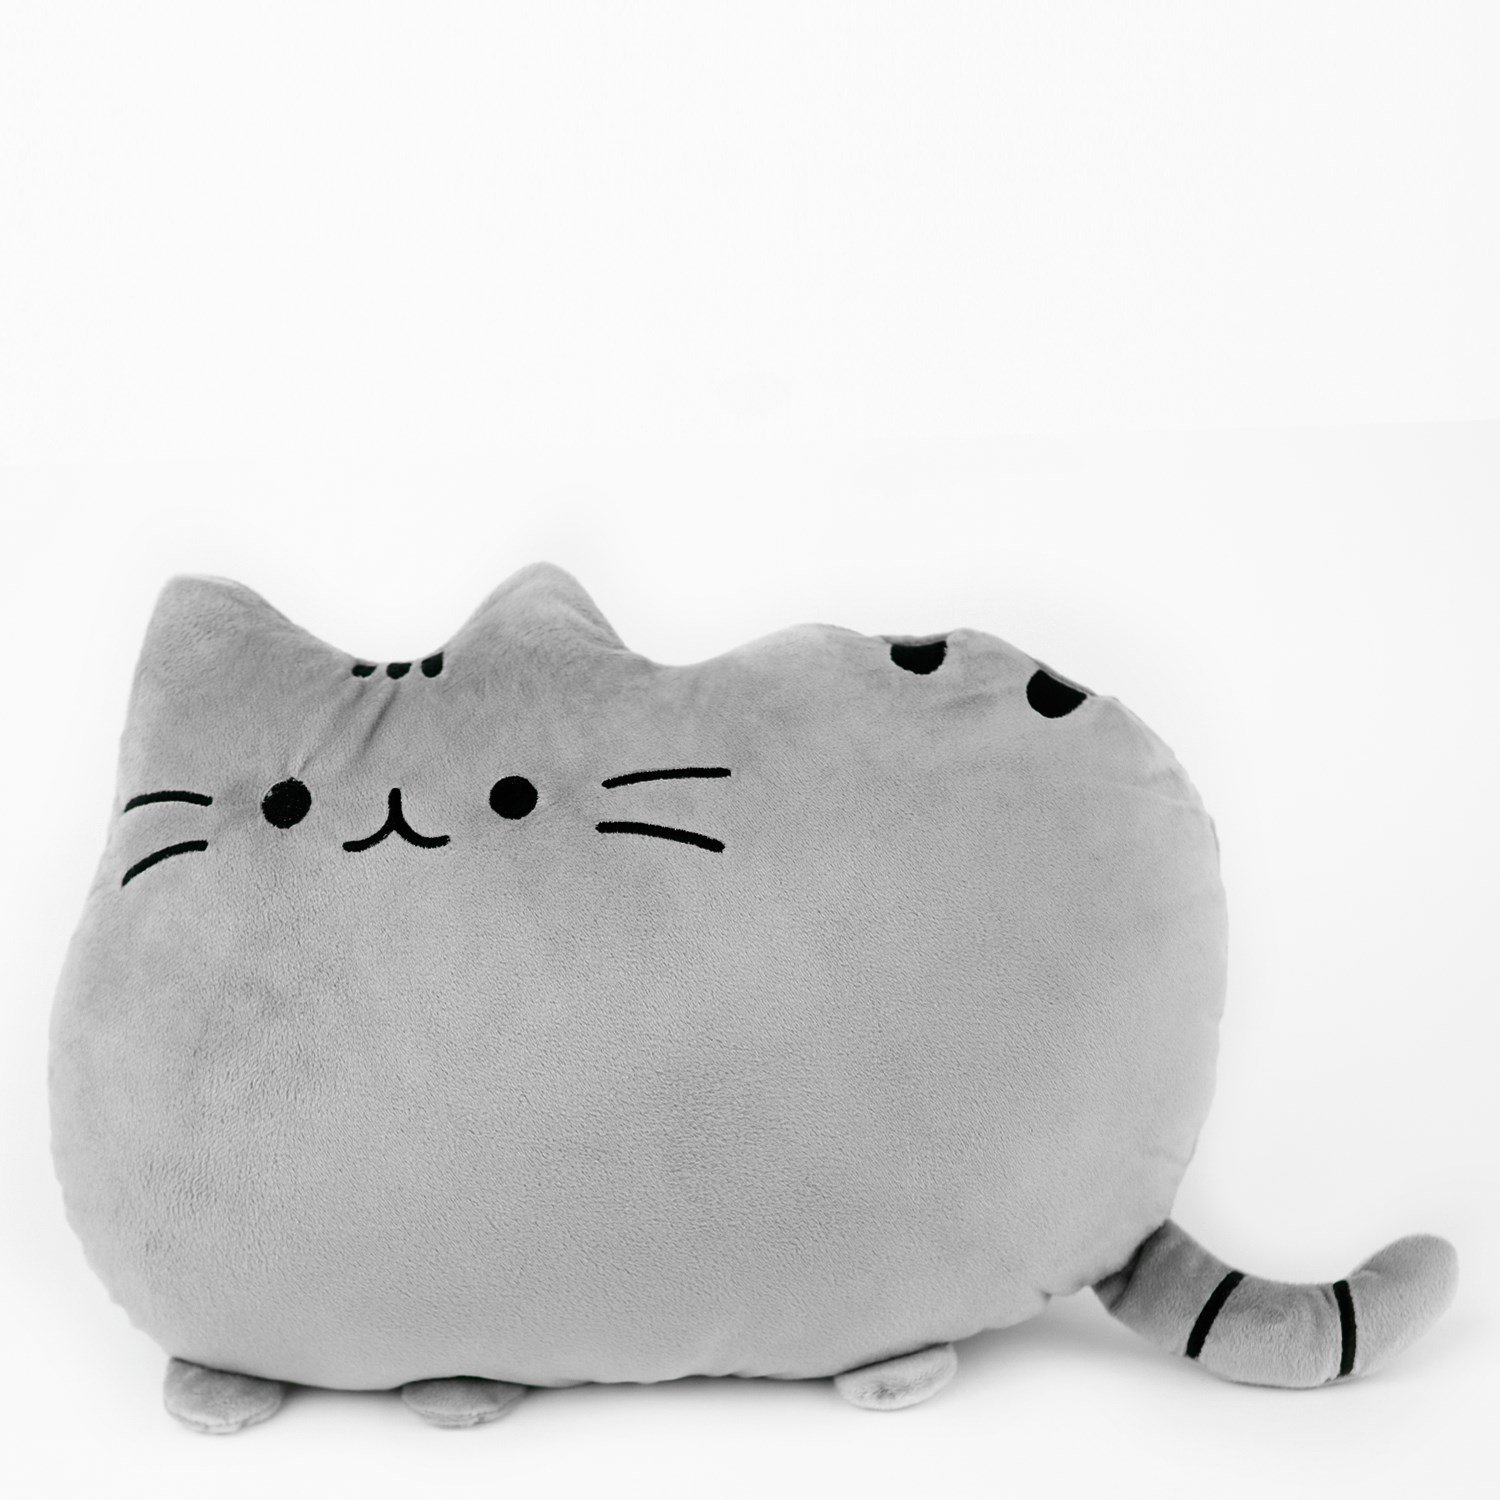 Характер кошки по подушечкам. Подушка Пушин Кэт. Картун Кэт подушка. Котик Пушин игрушка подушка. Мягкая игрушка кошка подушка.